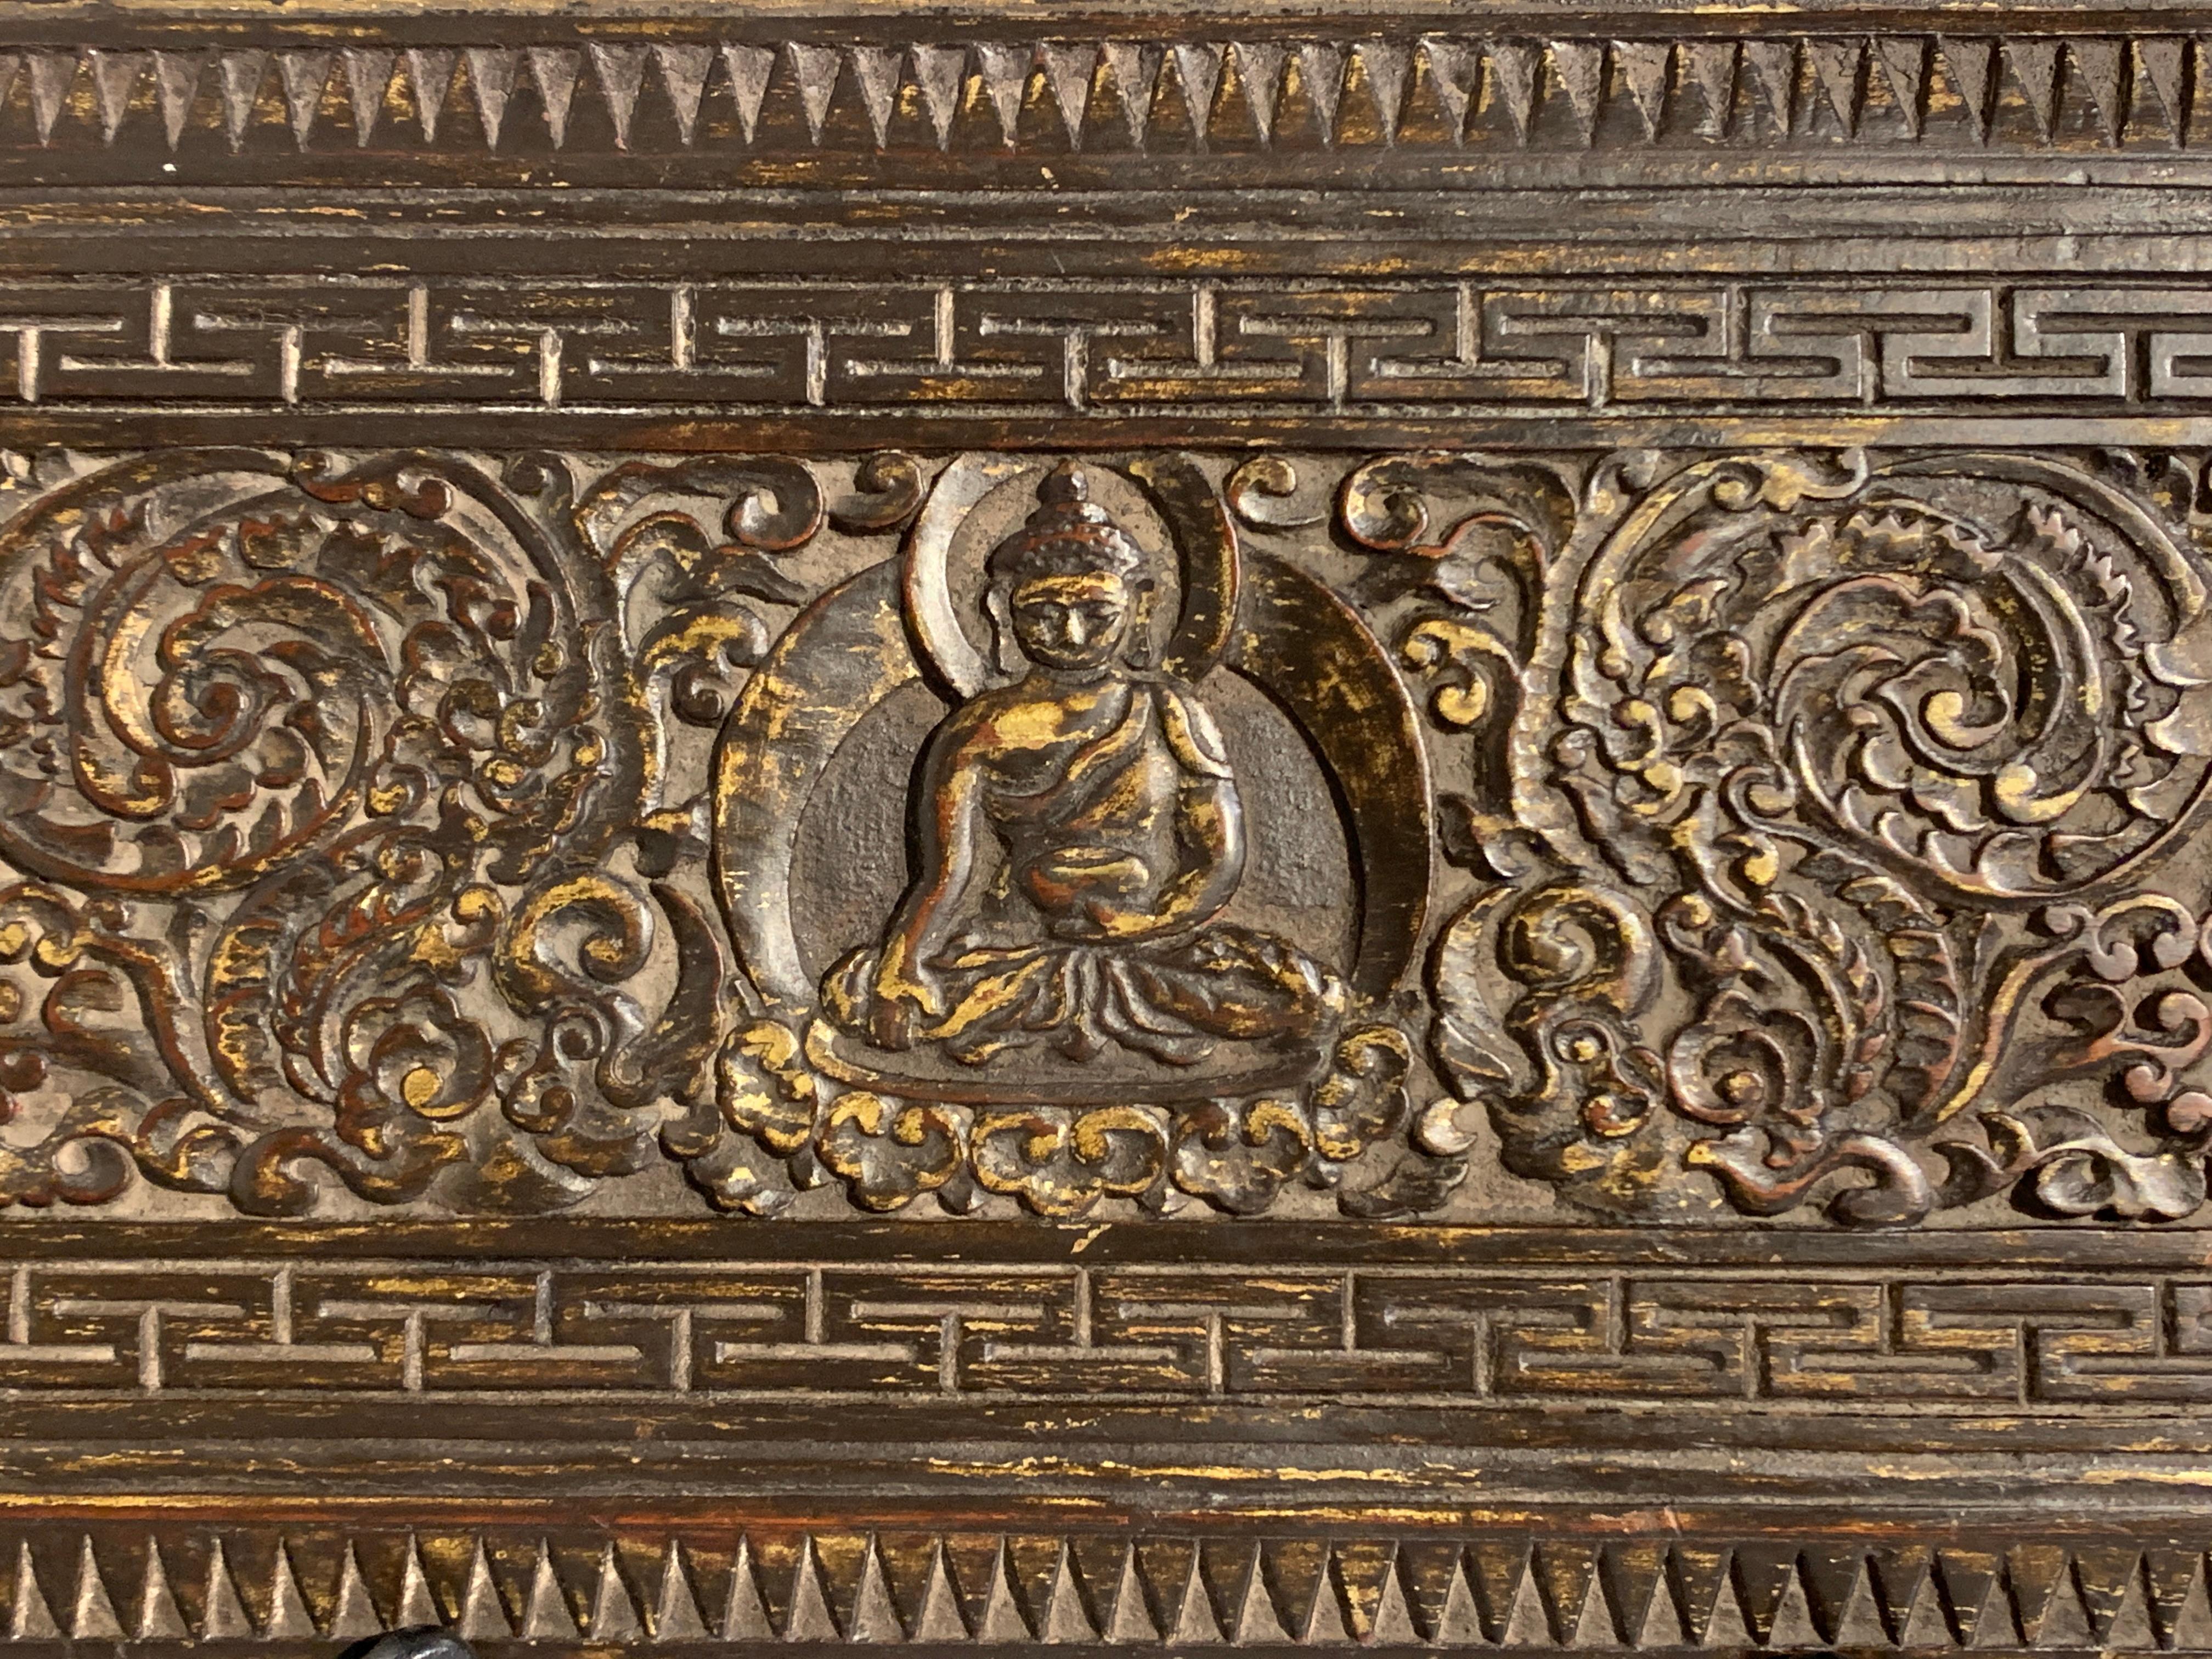 Ein schöner und ungewöhnlicher hölzerner Buch- oder Manuskripteinband mit geschnitzter Außenseite und bemalter Innenseite, 15. Jahrhundert, Nepal. 

Das Äußere des Manuskriptdeckels ist üppig geschnitzt mit einer Figur von Shakyamuni, dem